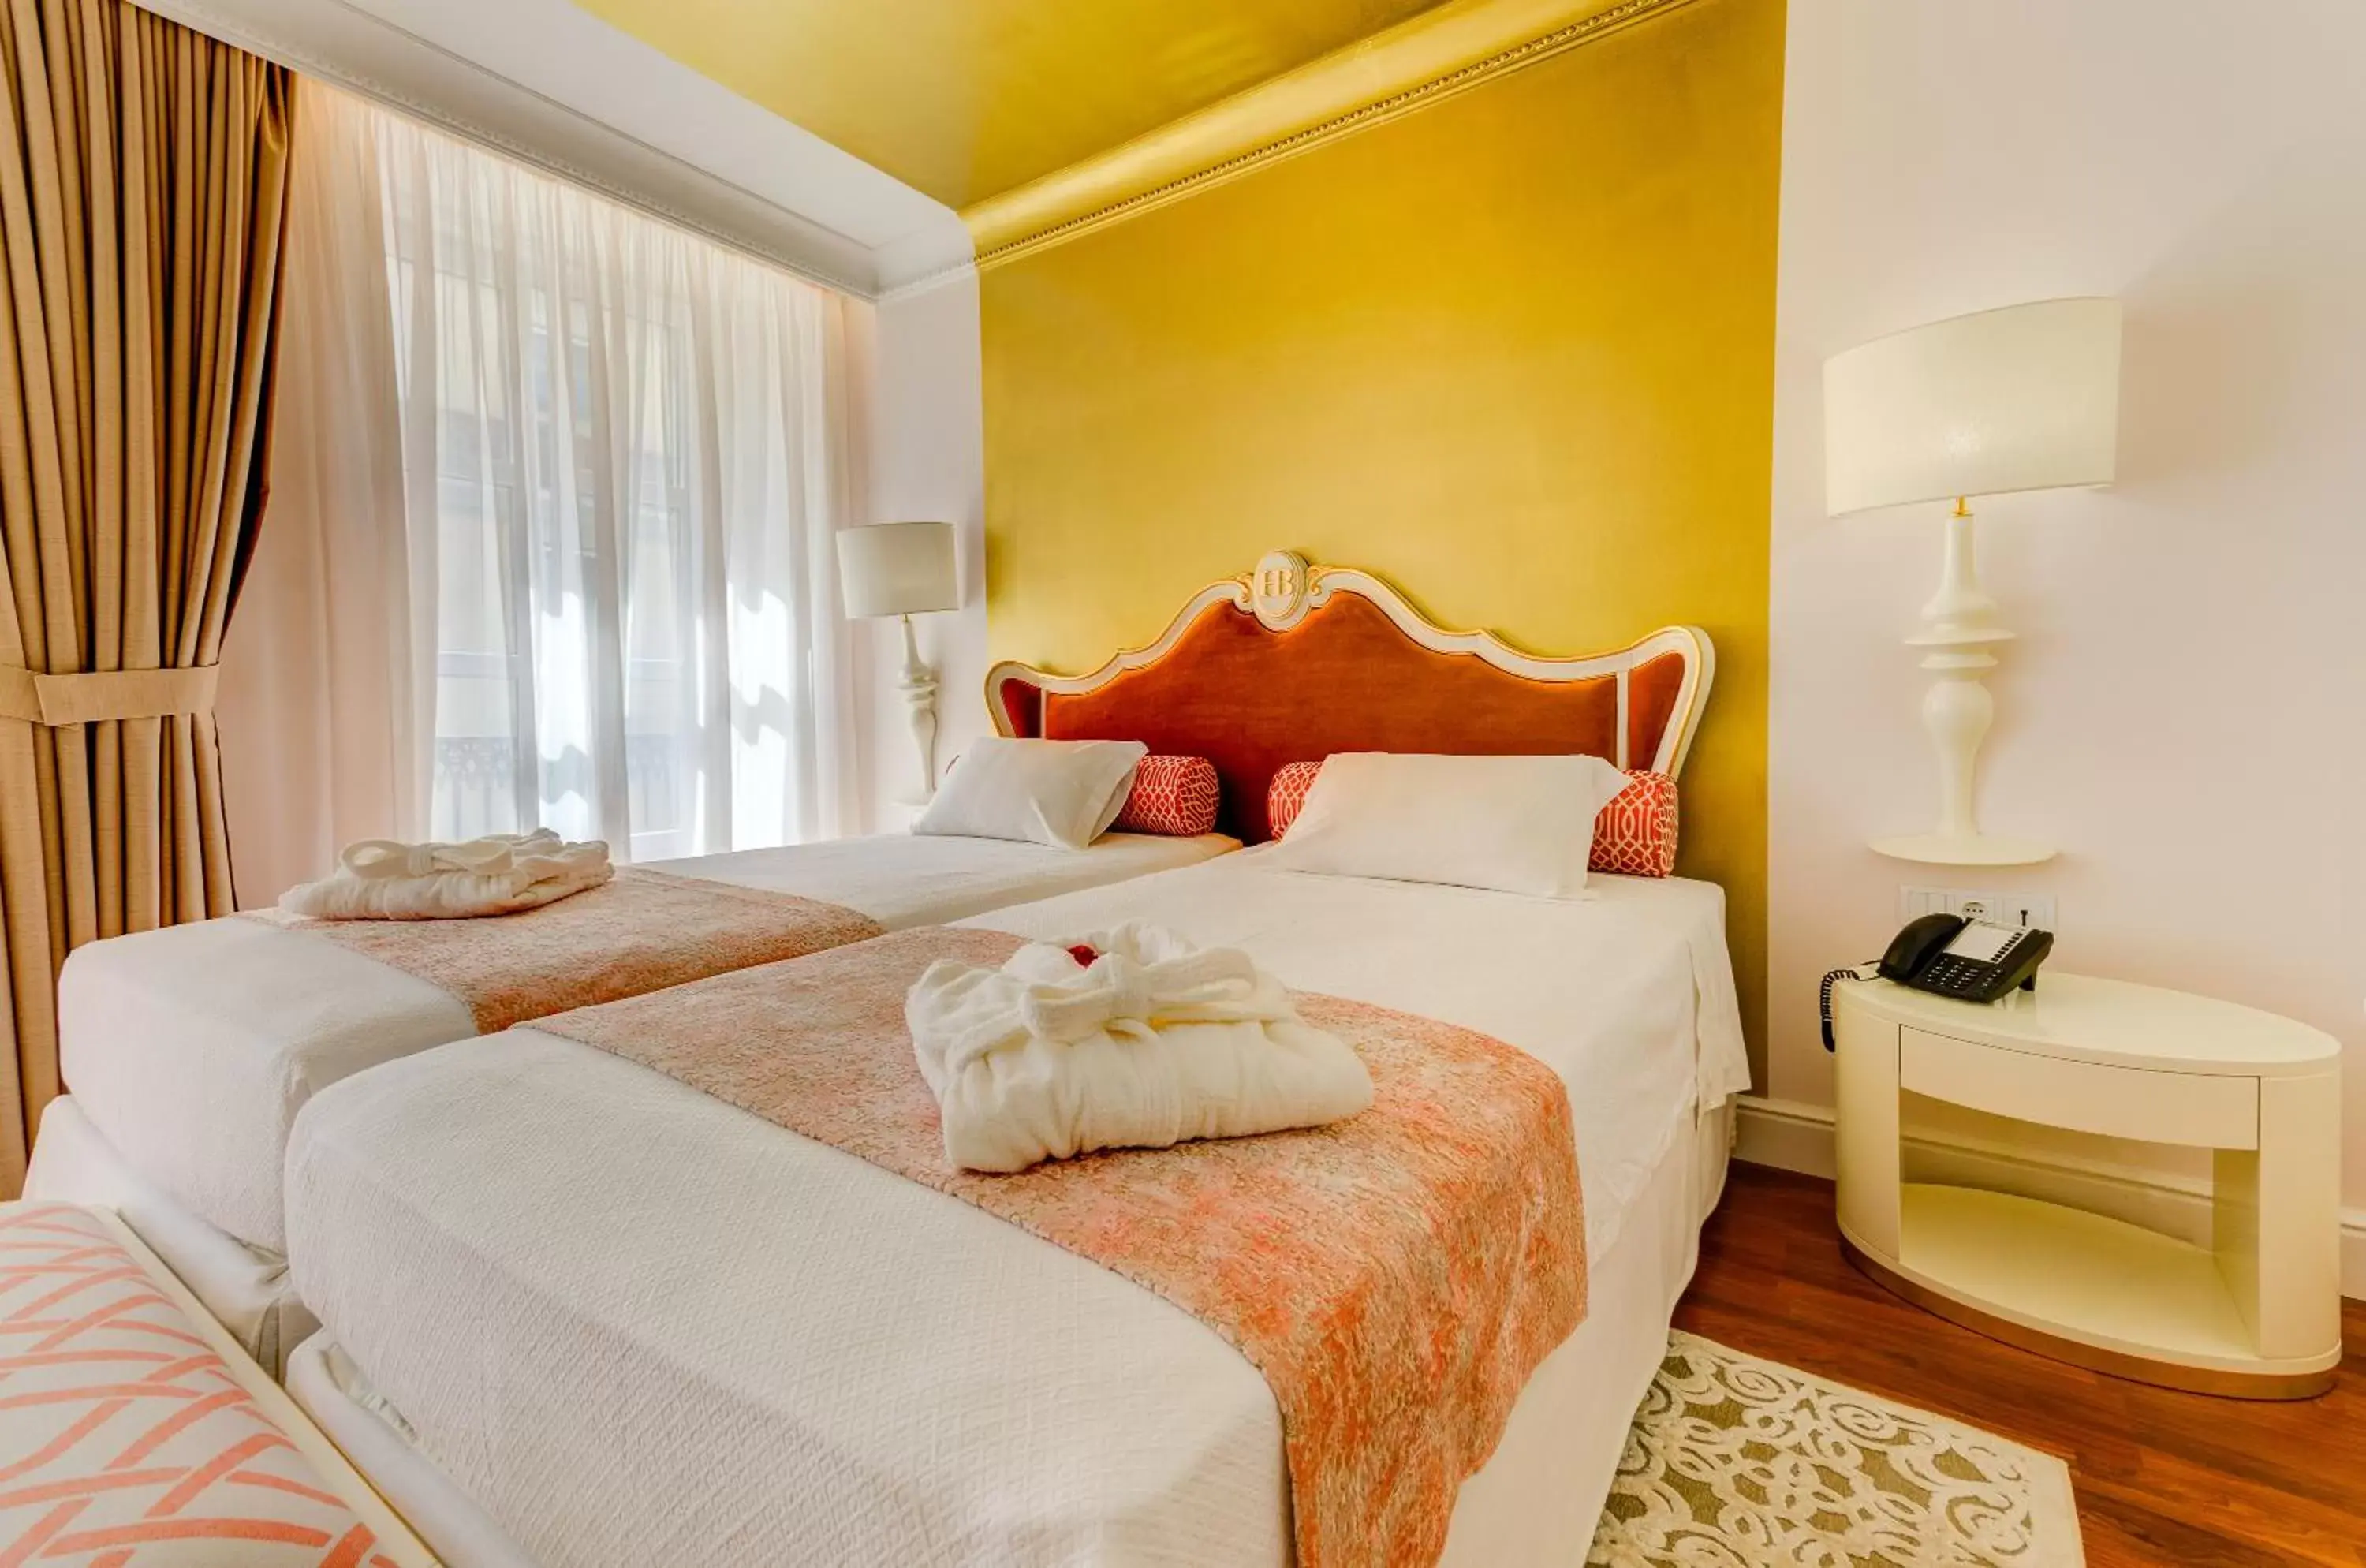 Bed, Room Photo in Hotel Borges Chiado